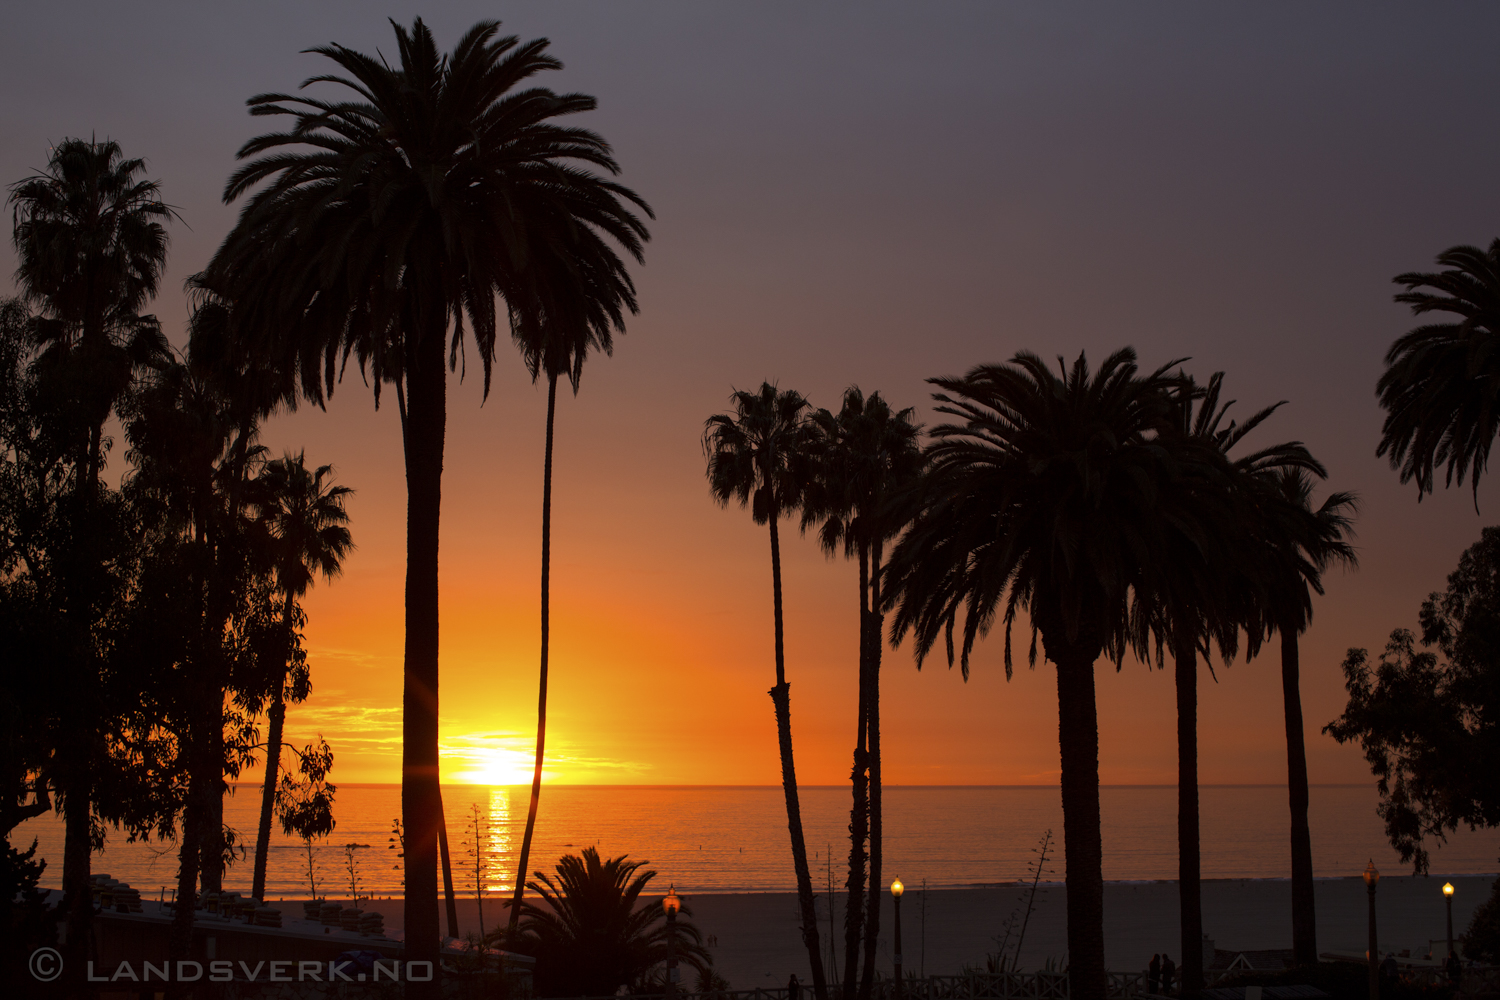 Santa Monica, California. 

(Canon EOS 5D Mark III / Canon EF 50mm f/1.2 L USM)